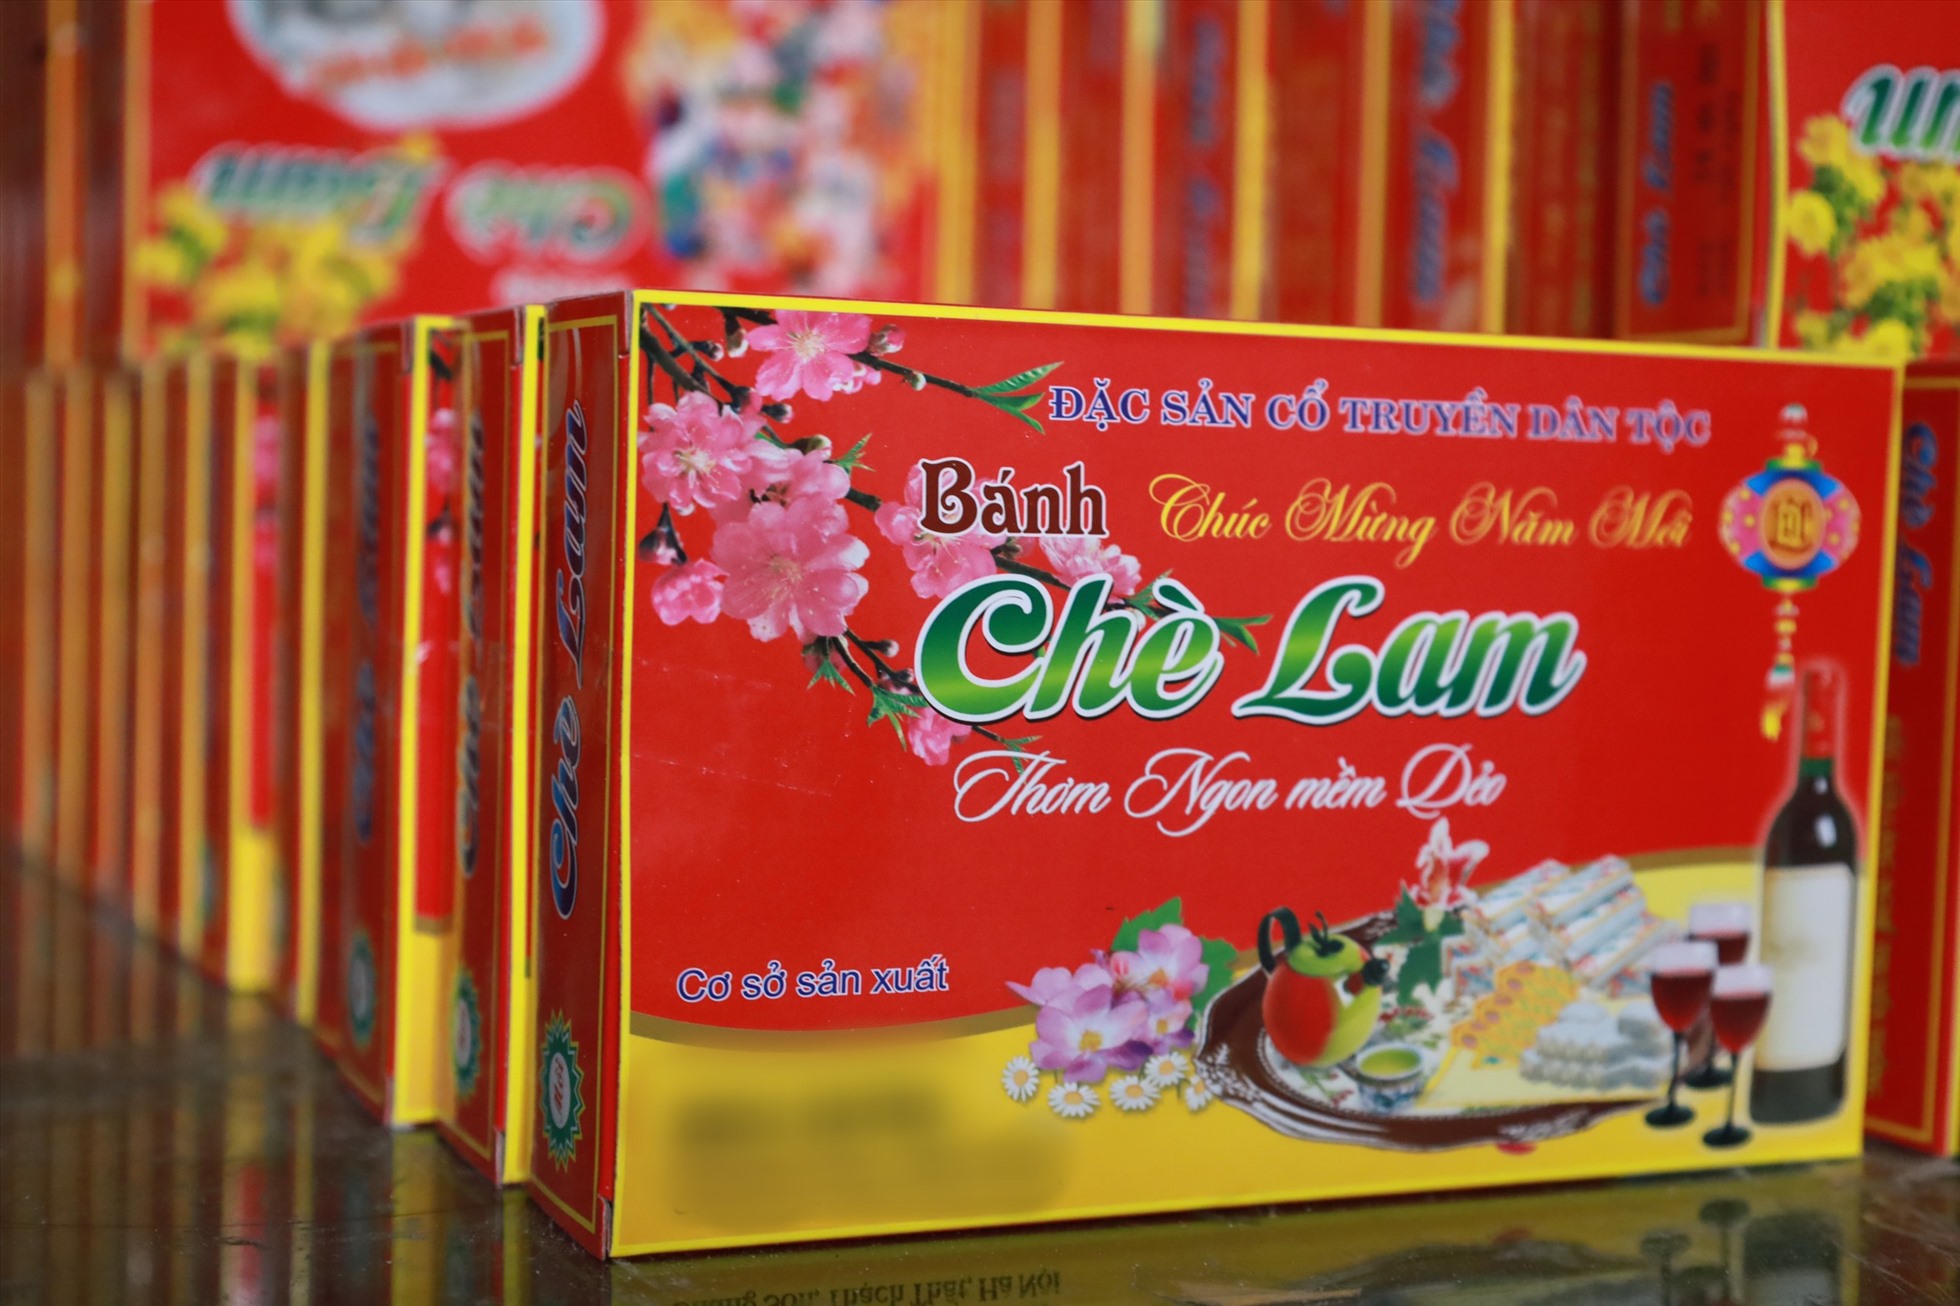 Ngày nay, chè lam được bán ở khắp các tỉnh thành trên cả nước. Ảnh: Nguyễn Thúy.